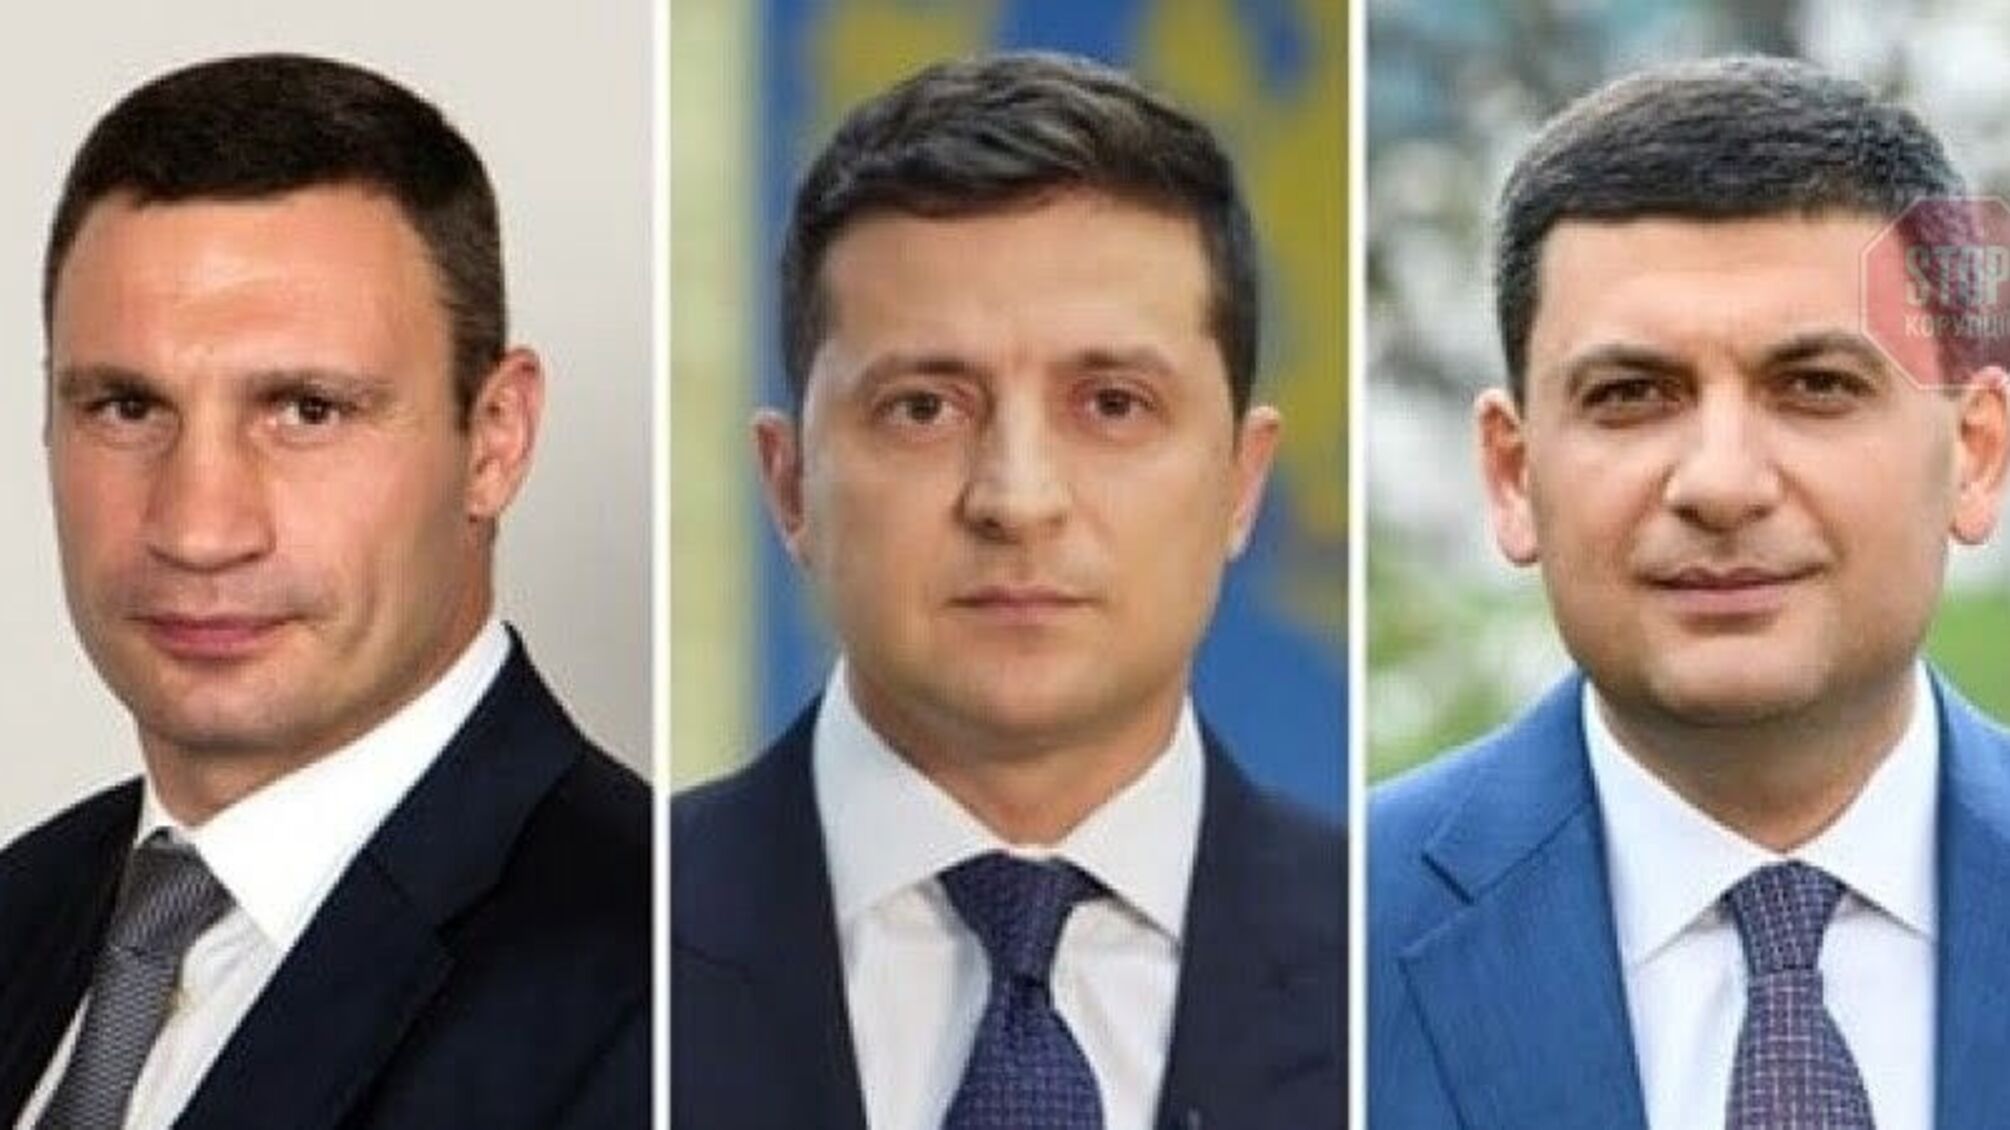 Зеленський очолює рейтинг довіри до політиків, за ним йдуть Кличко і Гройсман - соцопитування